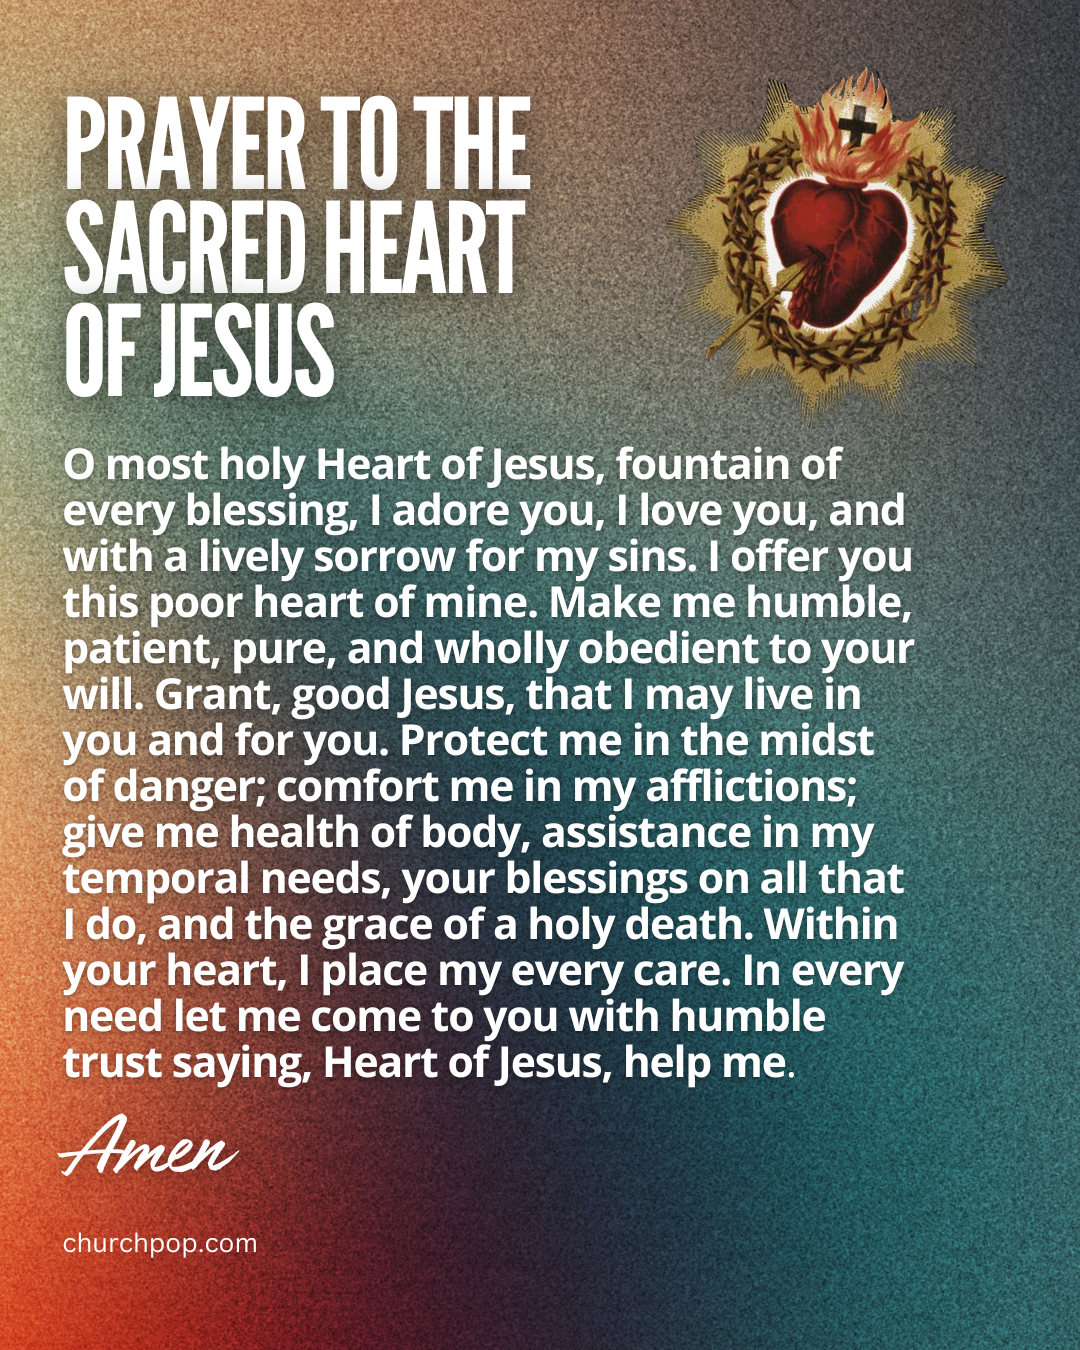 sacred heart of jesus, sacred heart of jesus prayer, sacred heart definition, sacred heart of jesus picture, sacred heart of jesus image